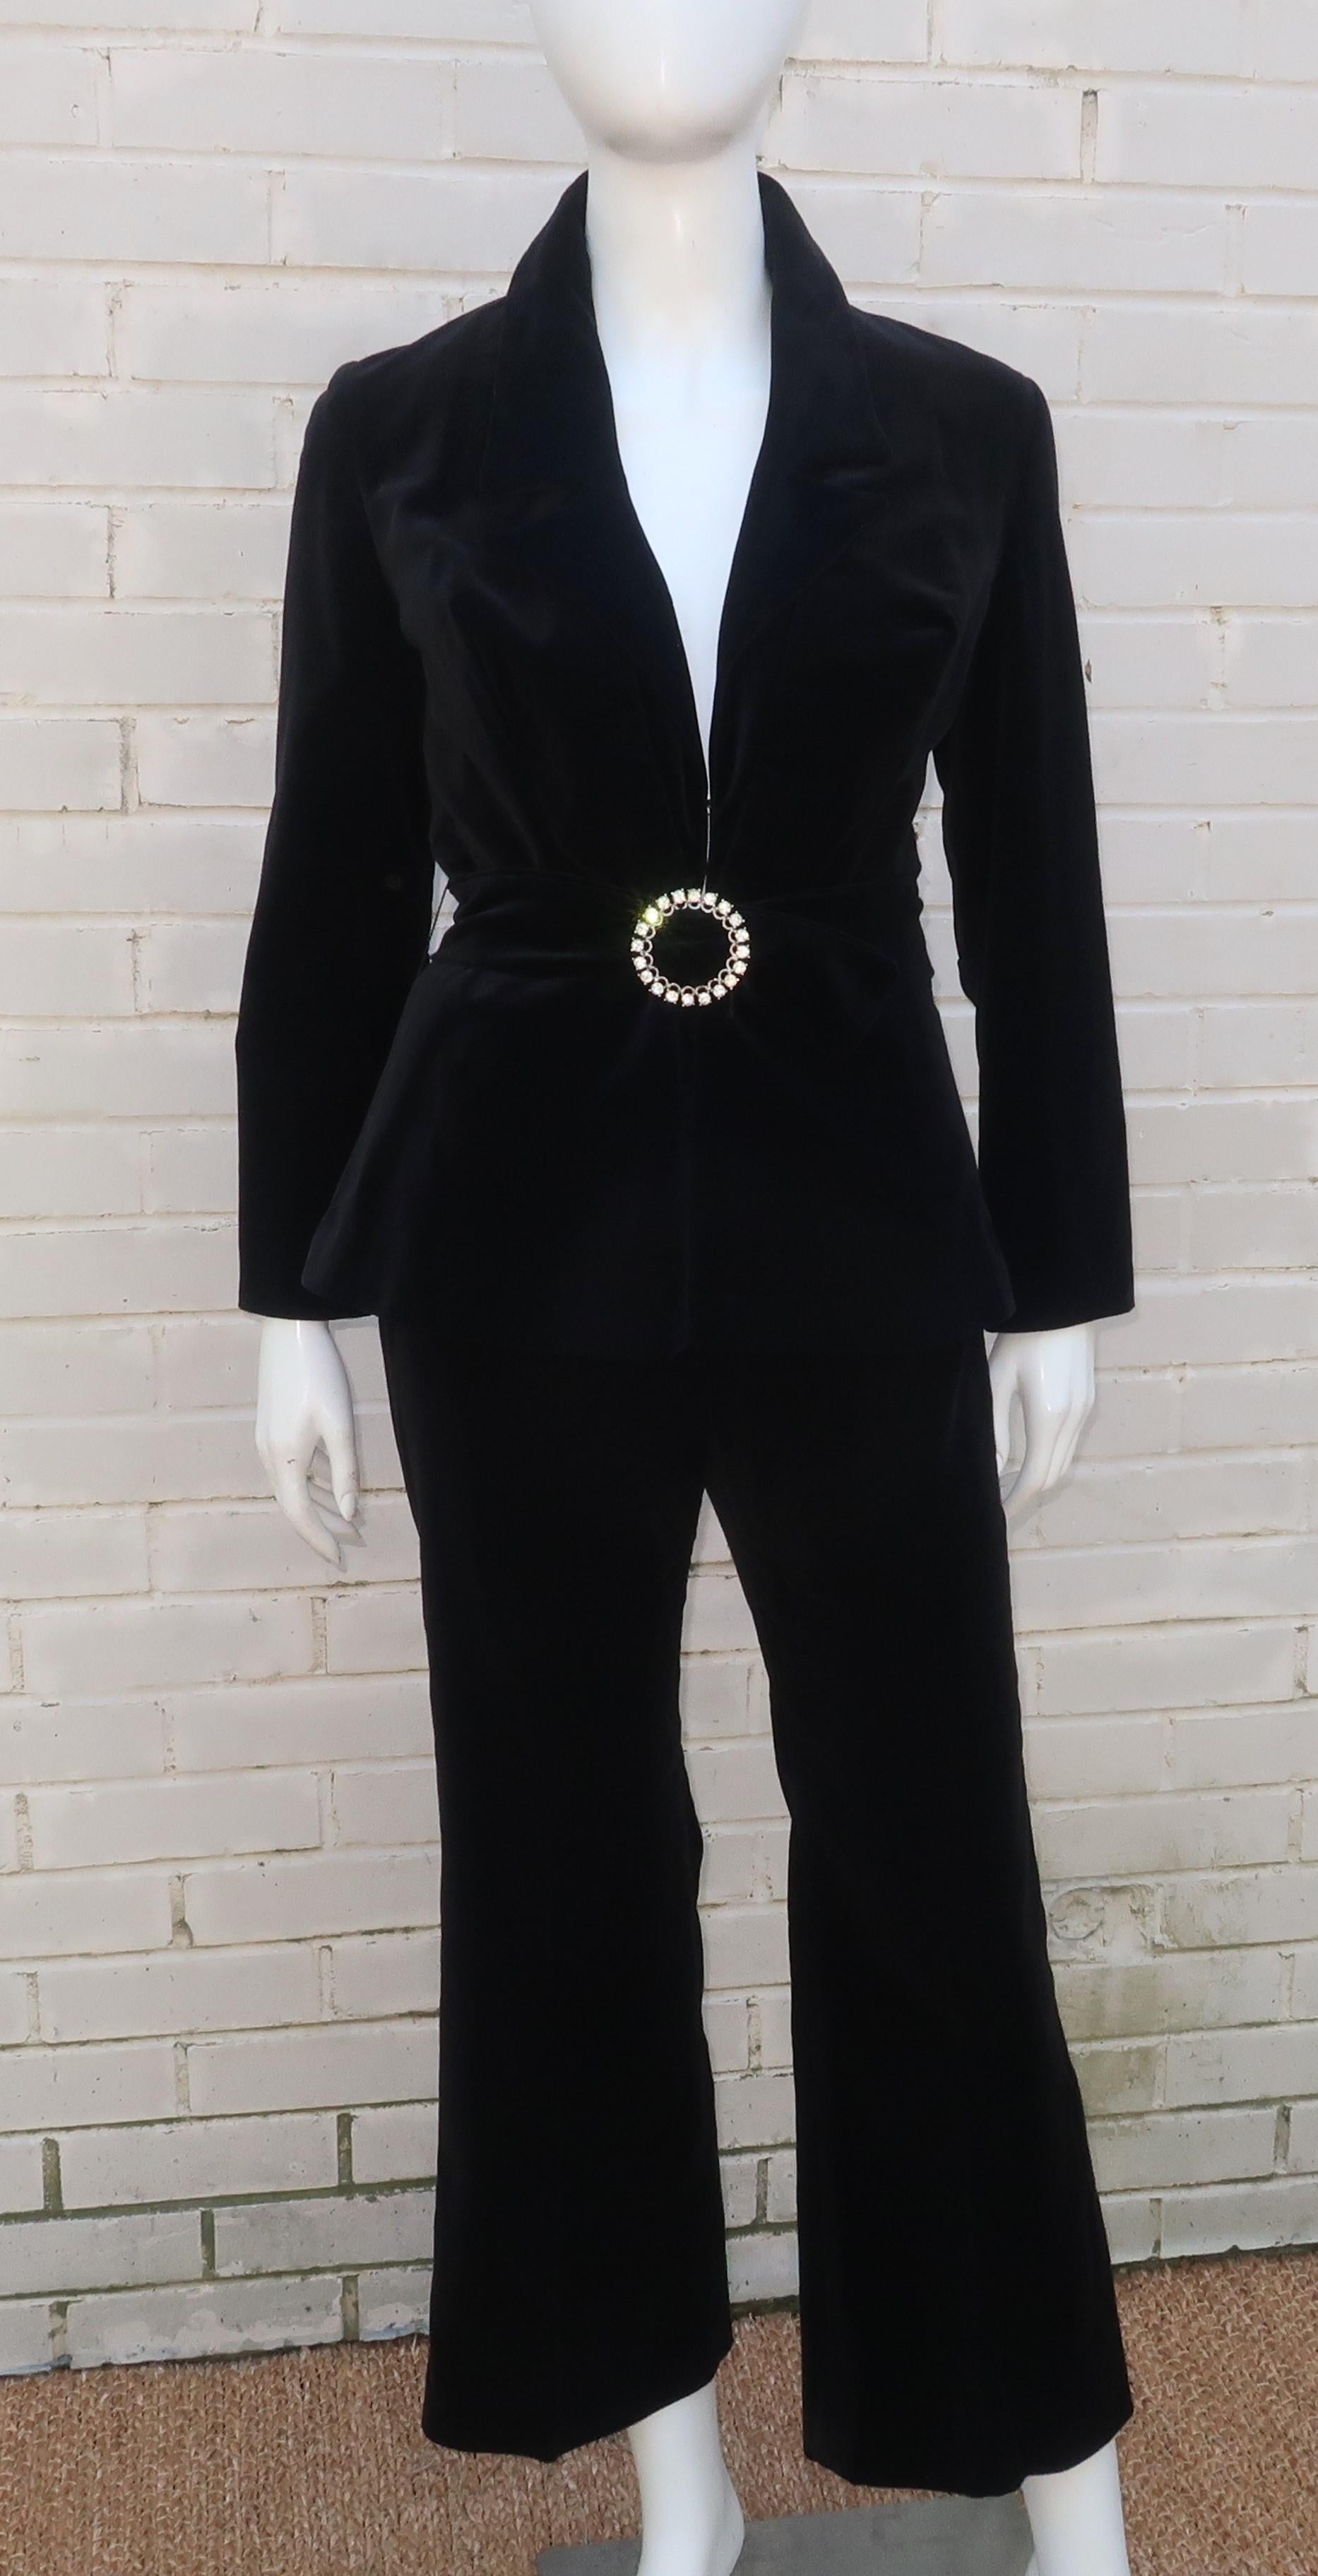 Costume pantalon en velours noir A.I.C. 1970 par Y.E.S. de Californie.  La veste s'accroche sur le devant avec une silhouette péplum et comporte une ceinture coordonnée avec boucle en strass.  Le pantalon est haut sur la taille et se ferme à